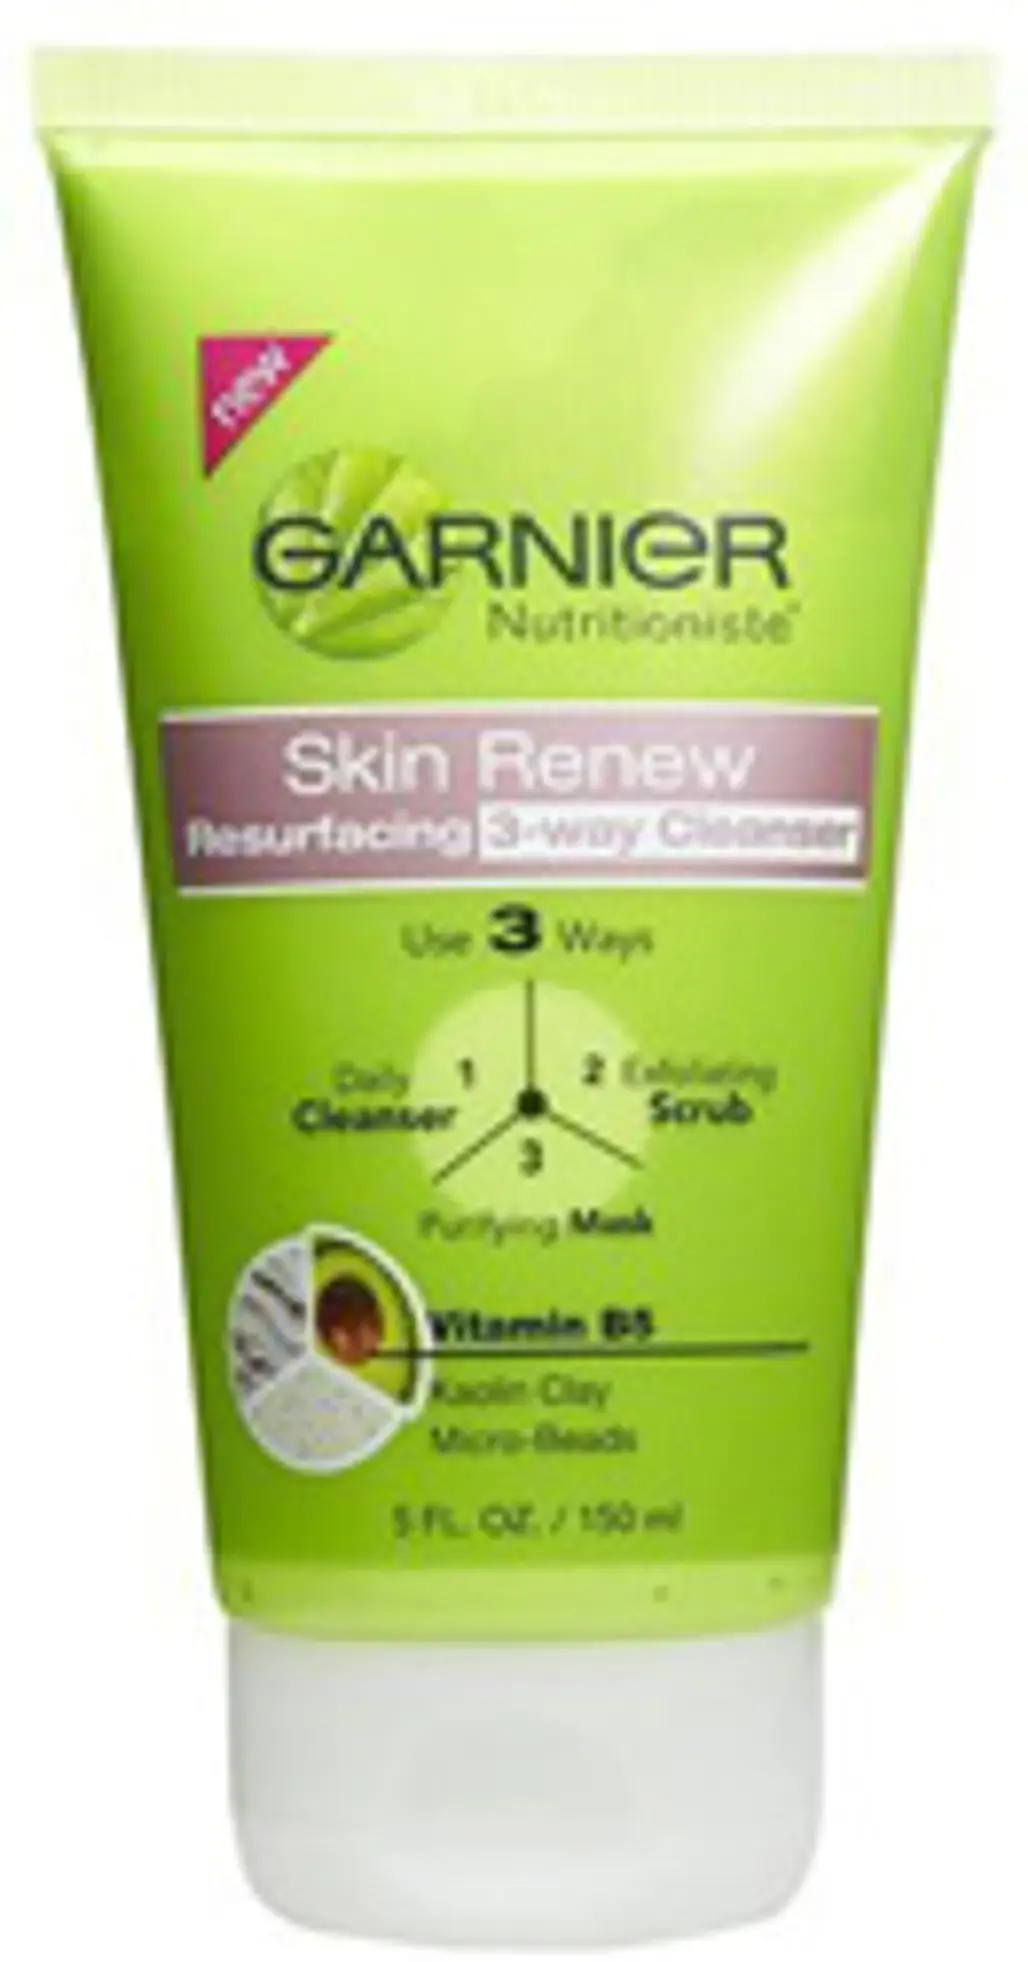 Garnier Nutritioniste Skin Renew 3 Way Cleanser